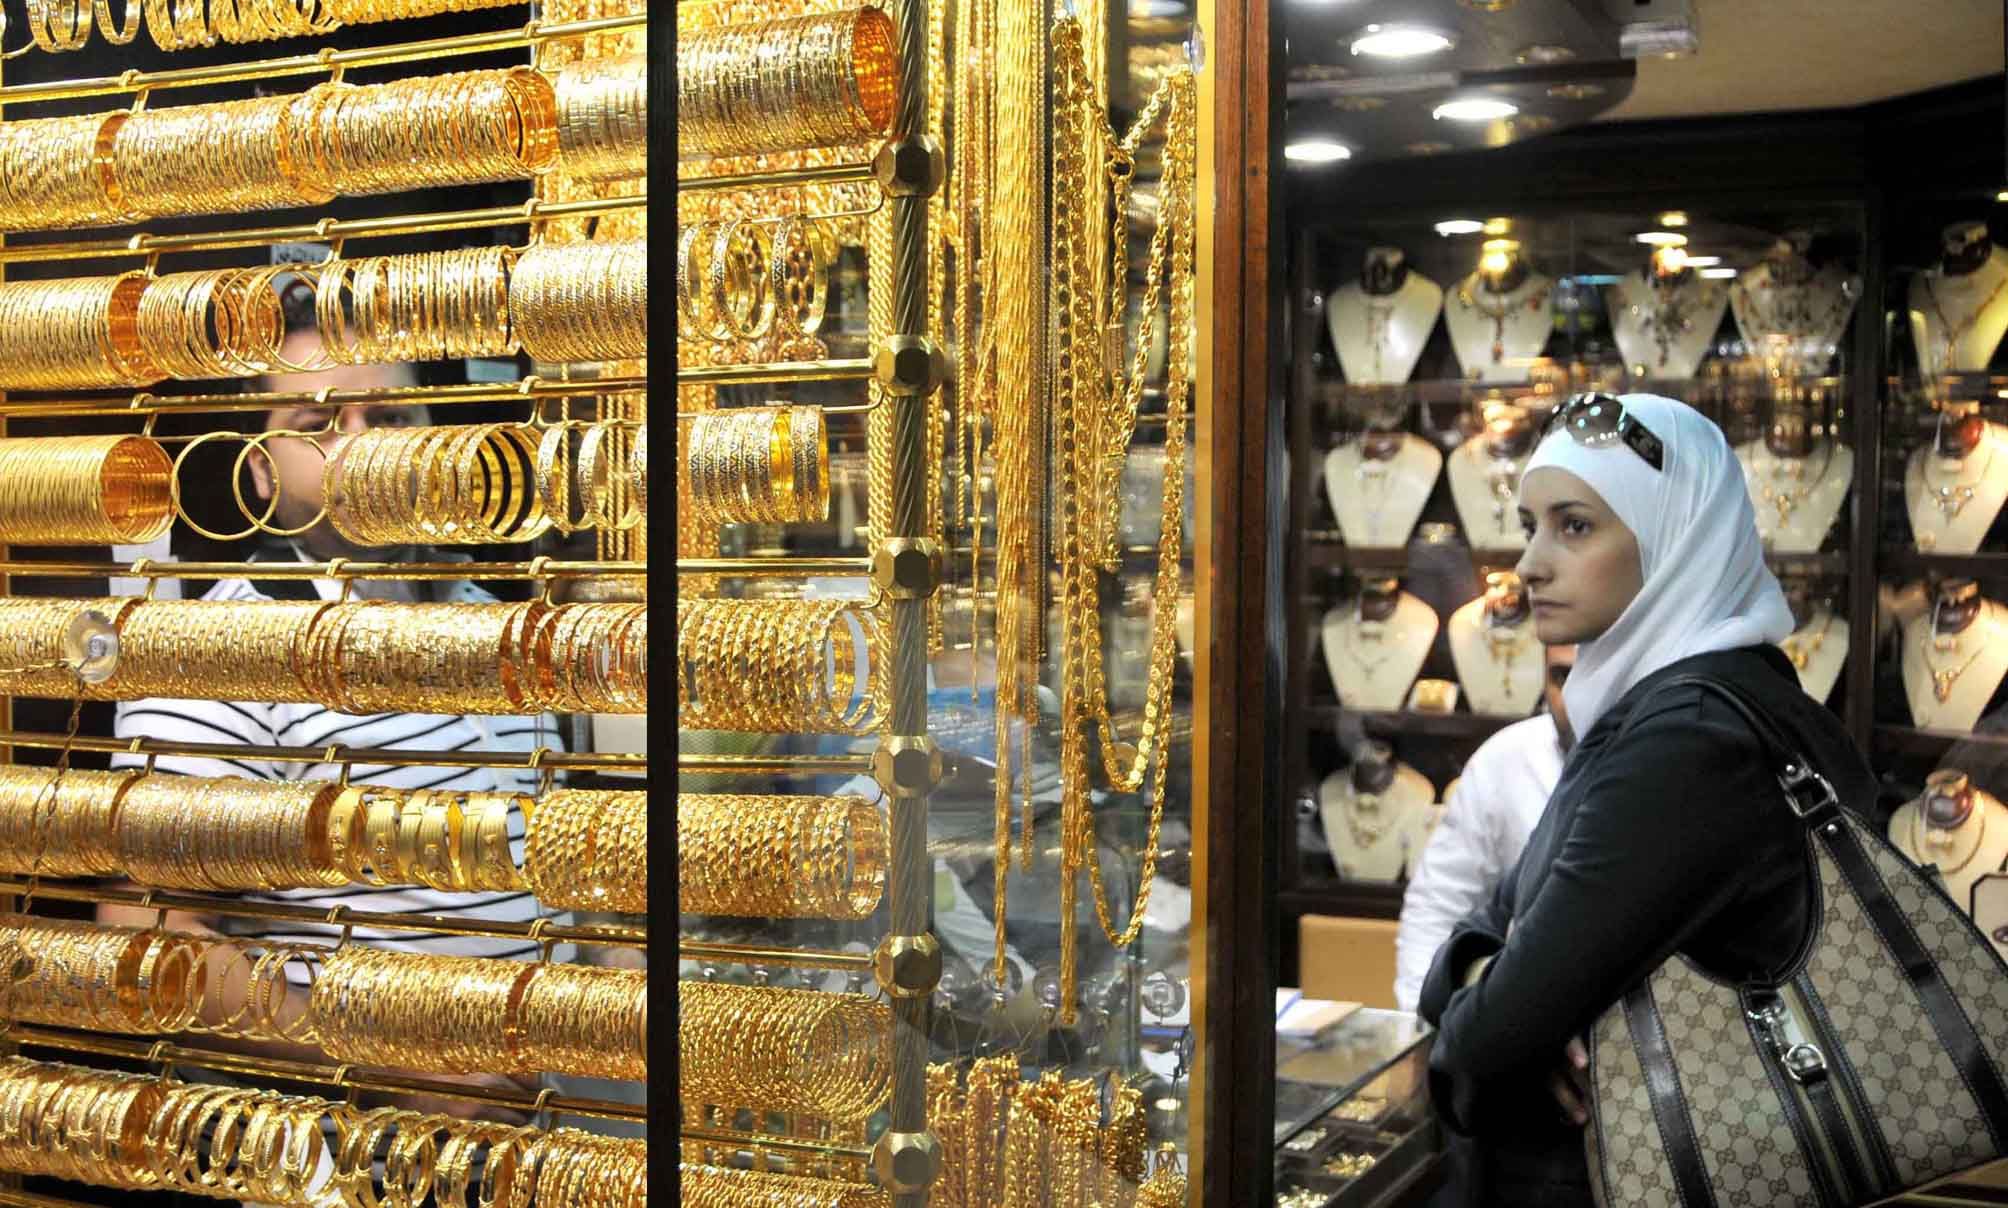 أسعار الذهب بالمصنعية اليوم السبت 10 فبراير الأسعار مفاجأة